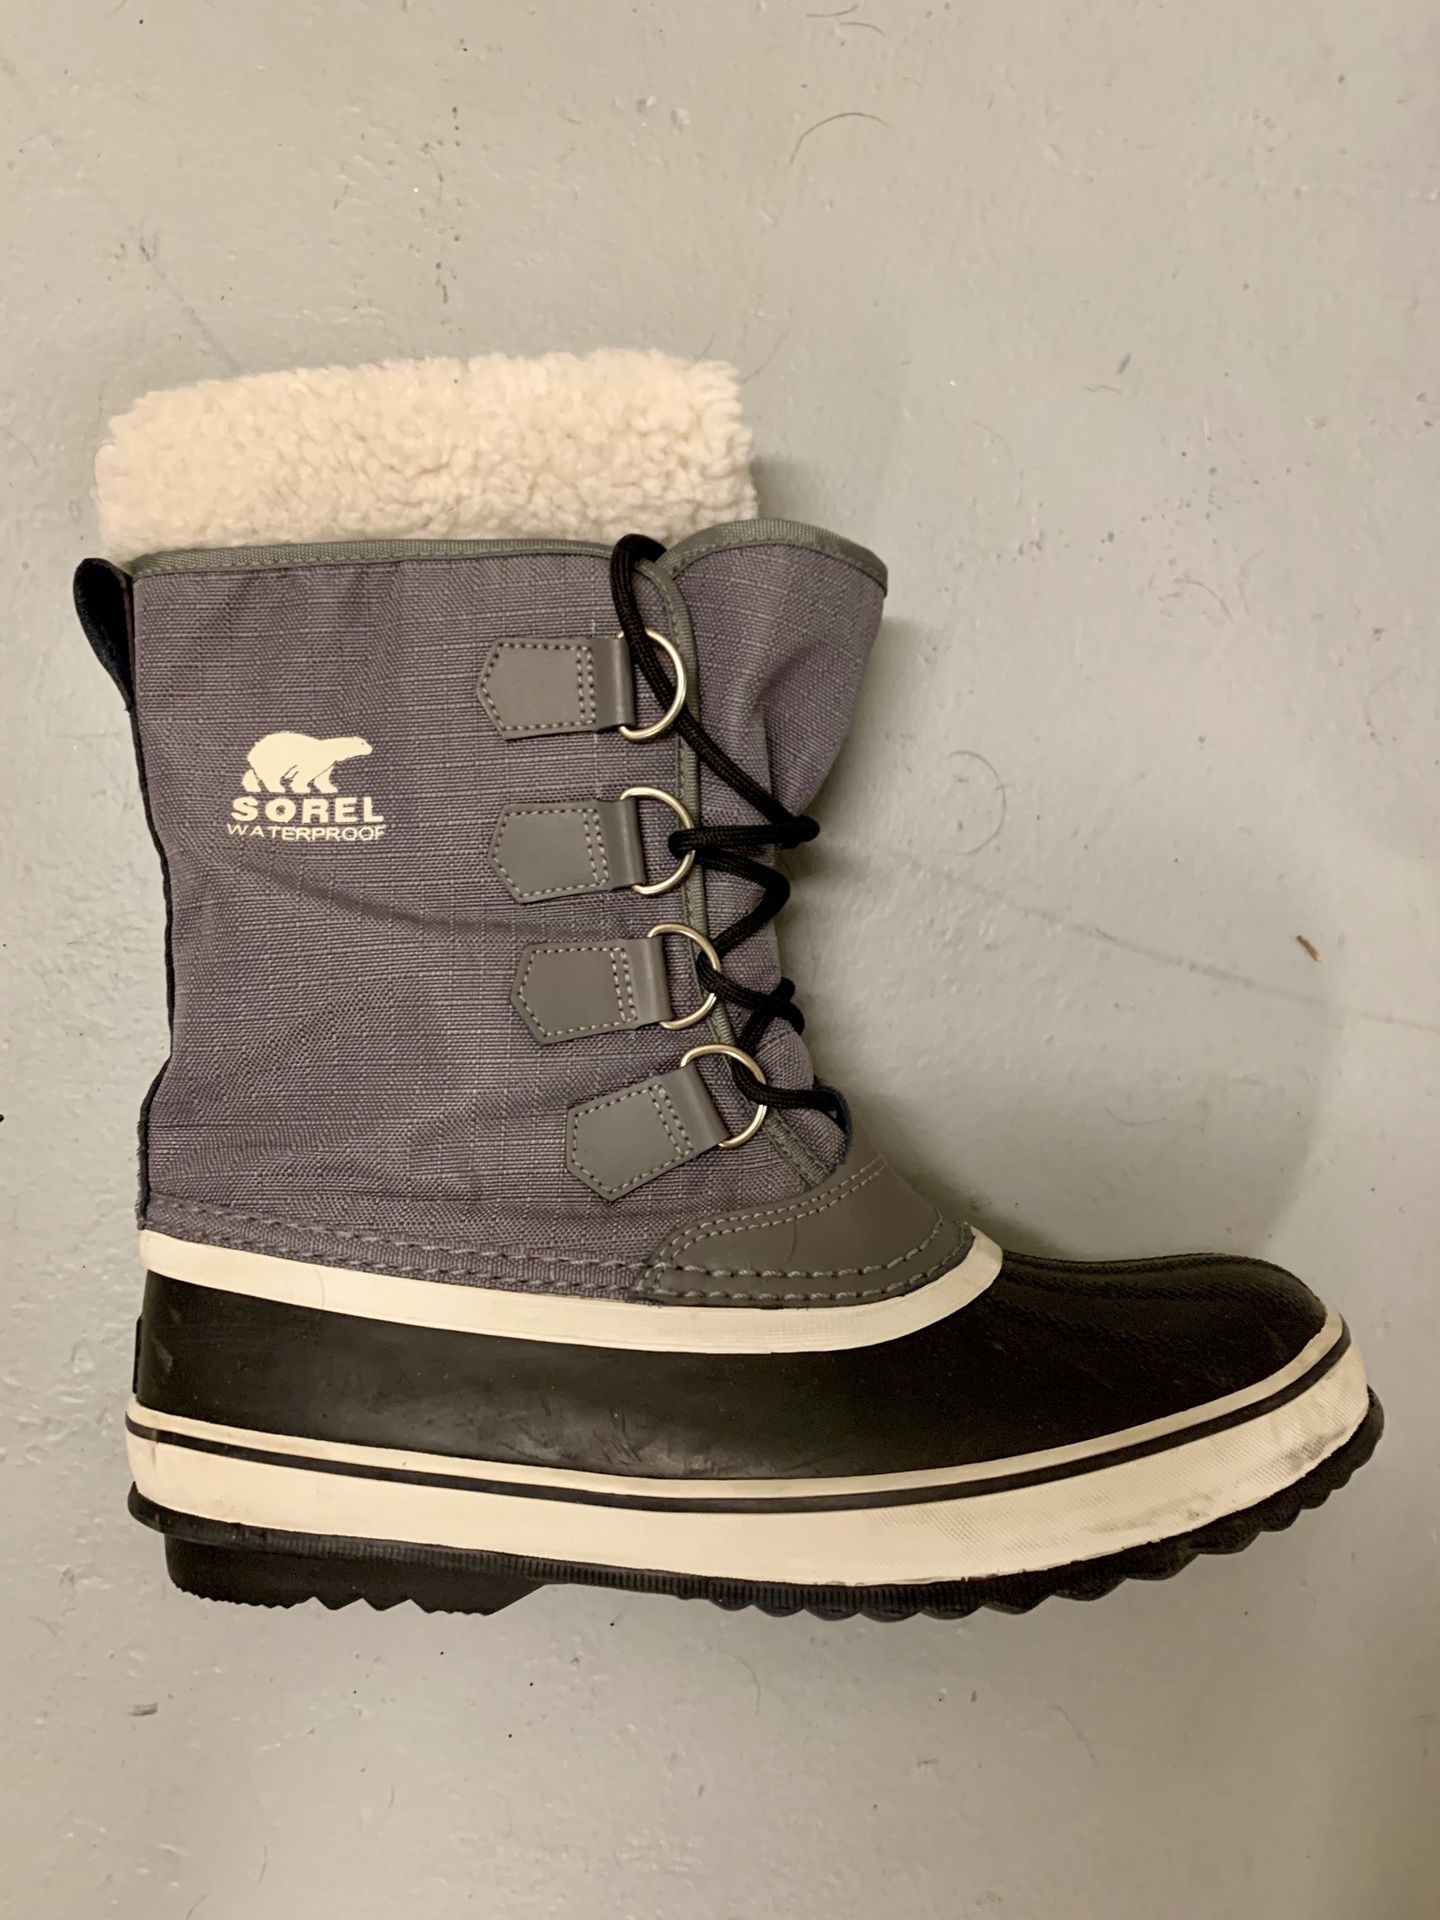 Sorel Winter Snow Boot Women’s